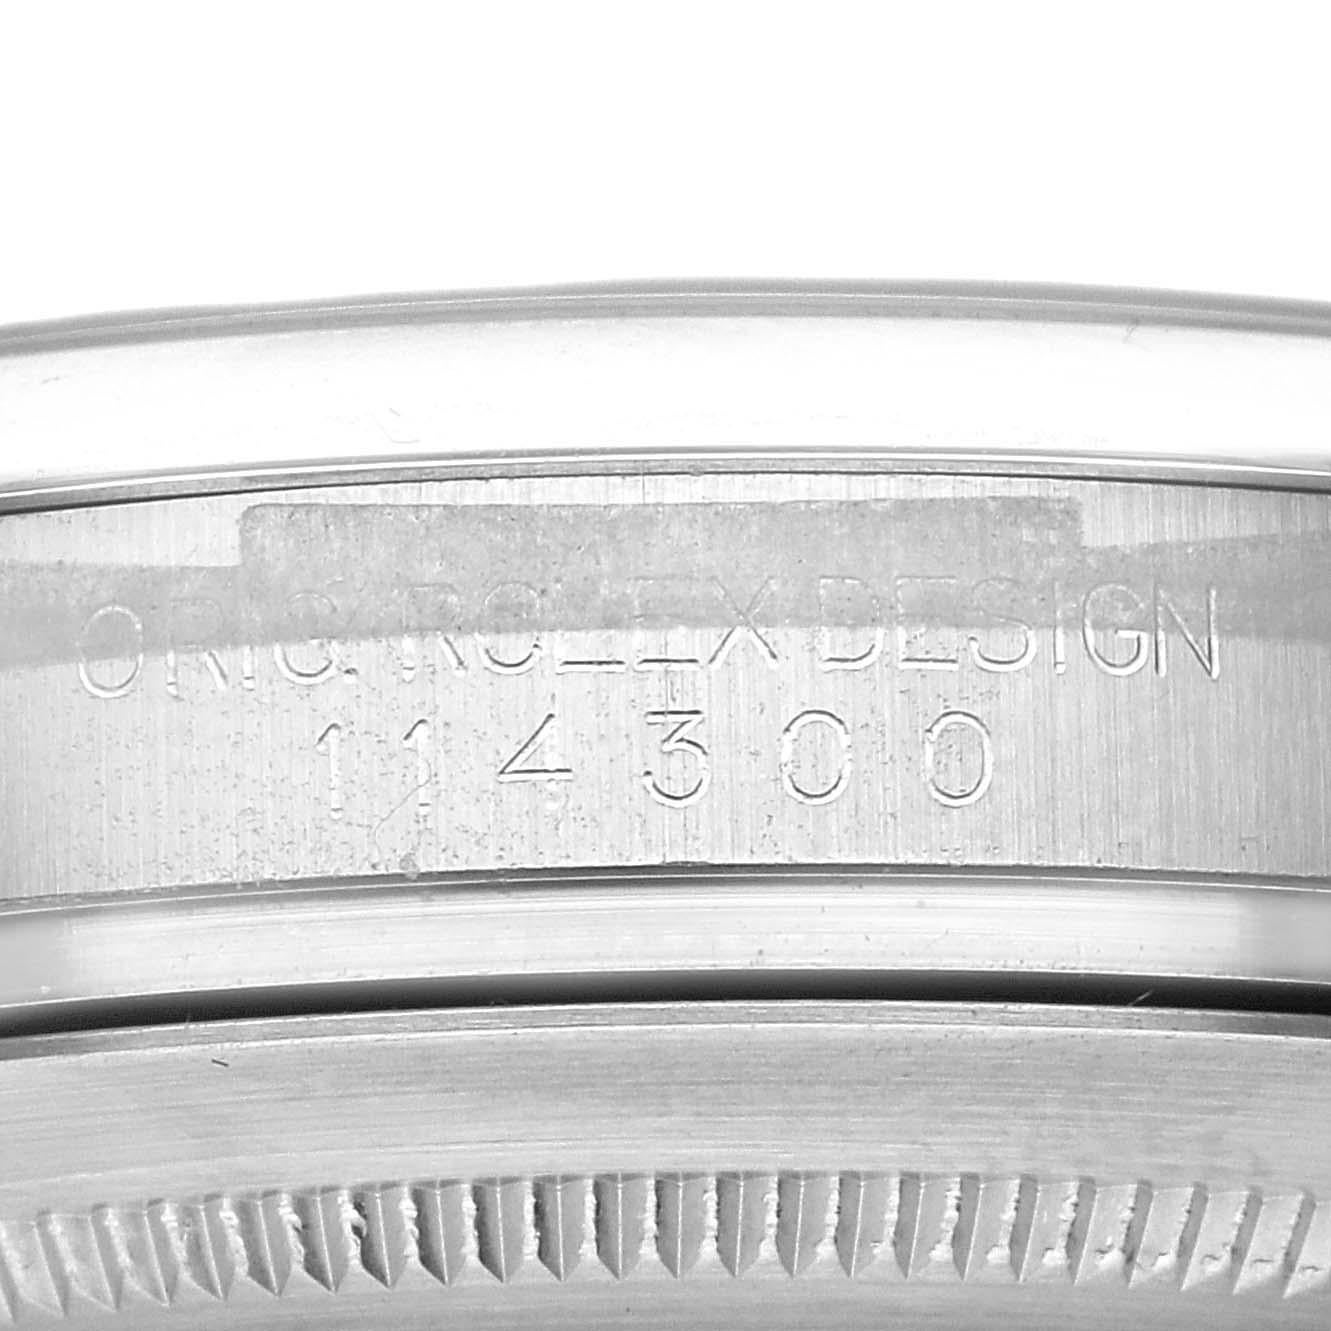 Rolex Oyster Perpetual 39mm Blue Dial Steel Mens Watch 114300. Mouvement automatique à remontage automatique, officiellement certifié chronomètre. Boîtier en acier inoxydable de 39 mm de diamètre. Logo Rolex sur une couronne. Lunette bombée lisse en